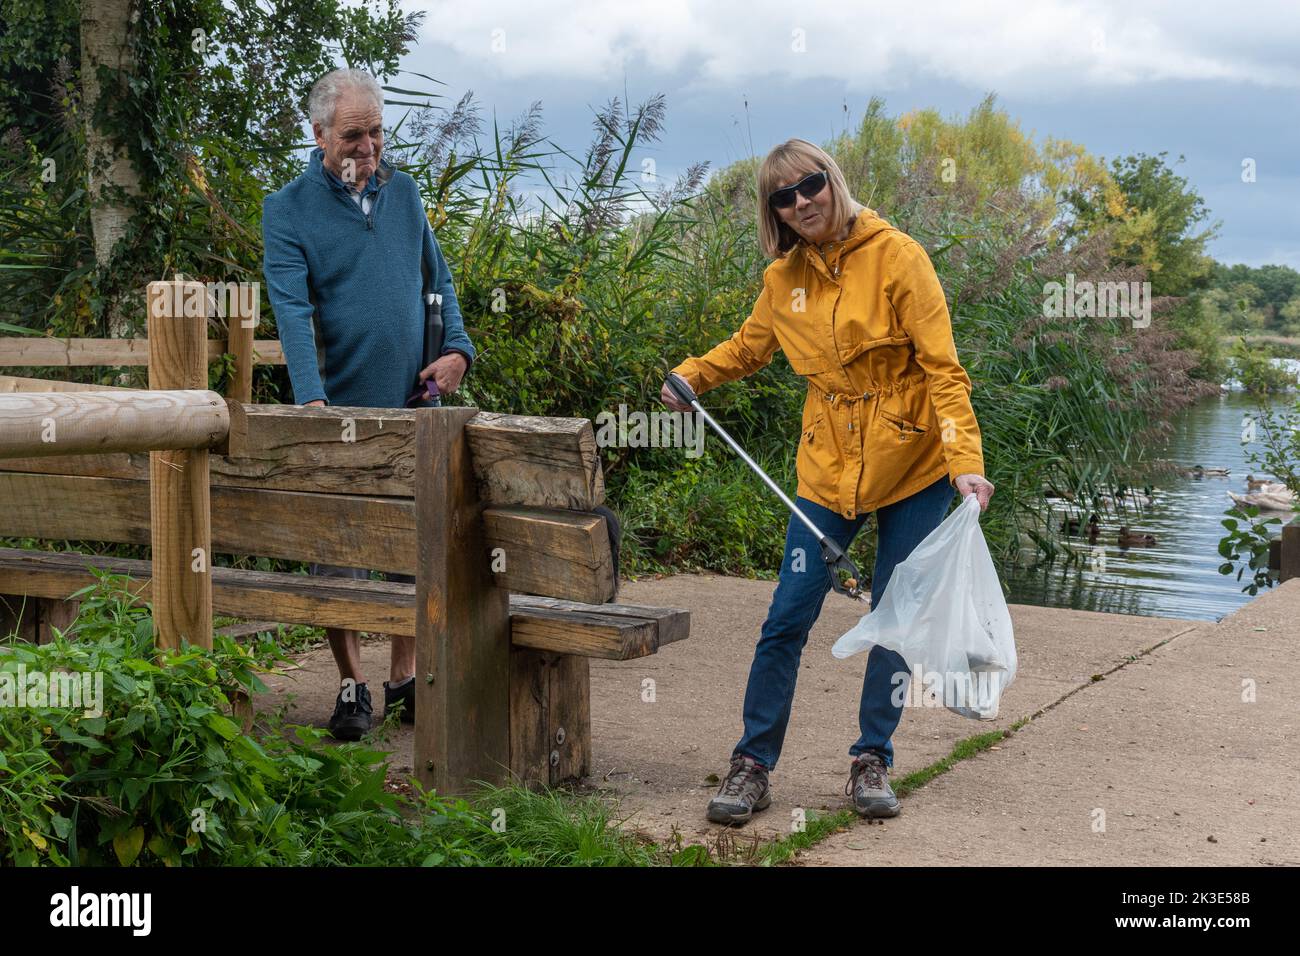 Ältere Paares sammeln Müll, Müllsammler aufräumen Landwege rund um Fleet Pond lokales Naturschutzgebiet, Hampshire, England, Großbritannien Stockfoto